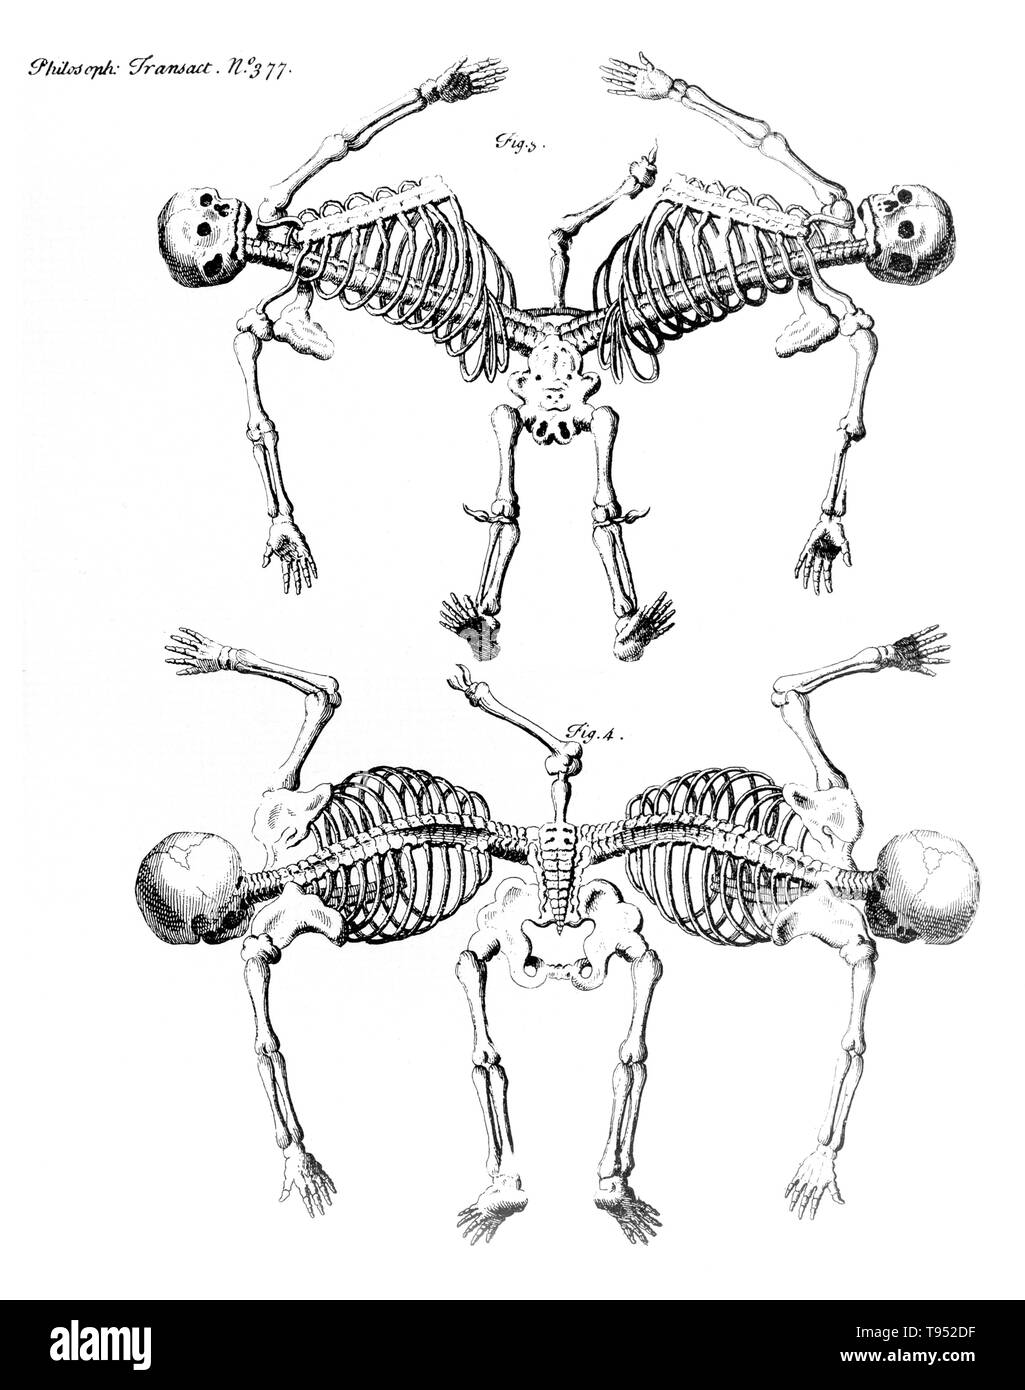 Jumeaux siamois sont de vrais jumeaux nés avec leur corps s'est joint à un moment et d'avoir plus ou moins de résidus de duplication, un résultat de la division incomplète de l'ovule à partir de laquelle les jumeaux mis au point. Les jumeaux Ischiopagus ont fusionné moitié inférieure des deux organes, d'épines jointes bout-en-bout à un angle de 180 degrés. Ces jumeaux ont quatre bras, deux, trois ou quatre pieds ; et, généralement, un ensemble d'organes génitaux féminins externes et l'anus. Droit paru dans "Philosophical Transactions", Volume 32 numéro 377, Firgure 3 & 4, publié 1720-23. Banque D'Images